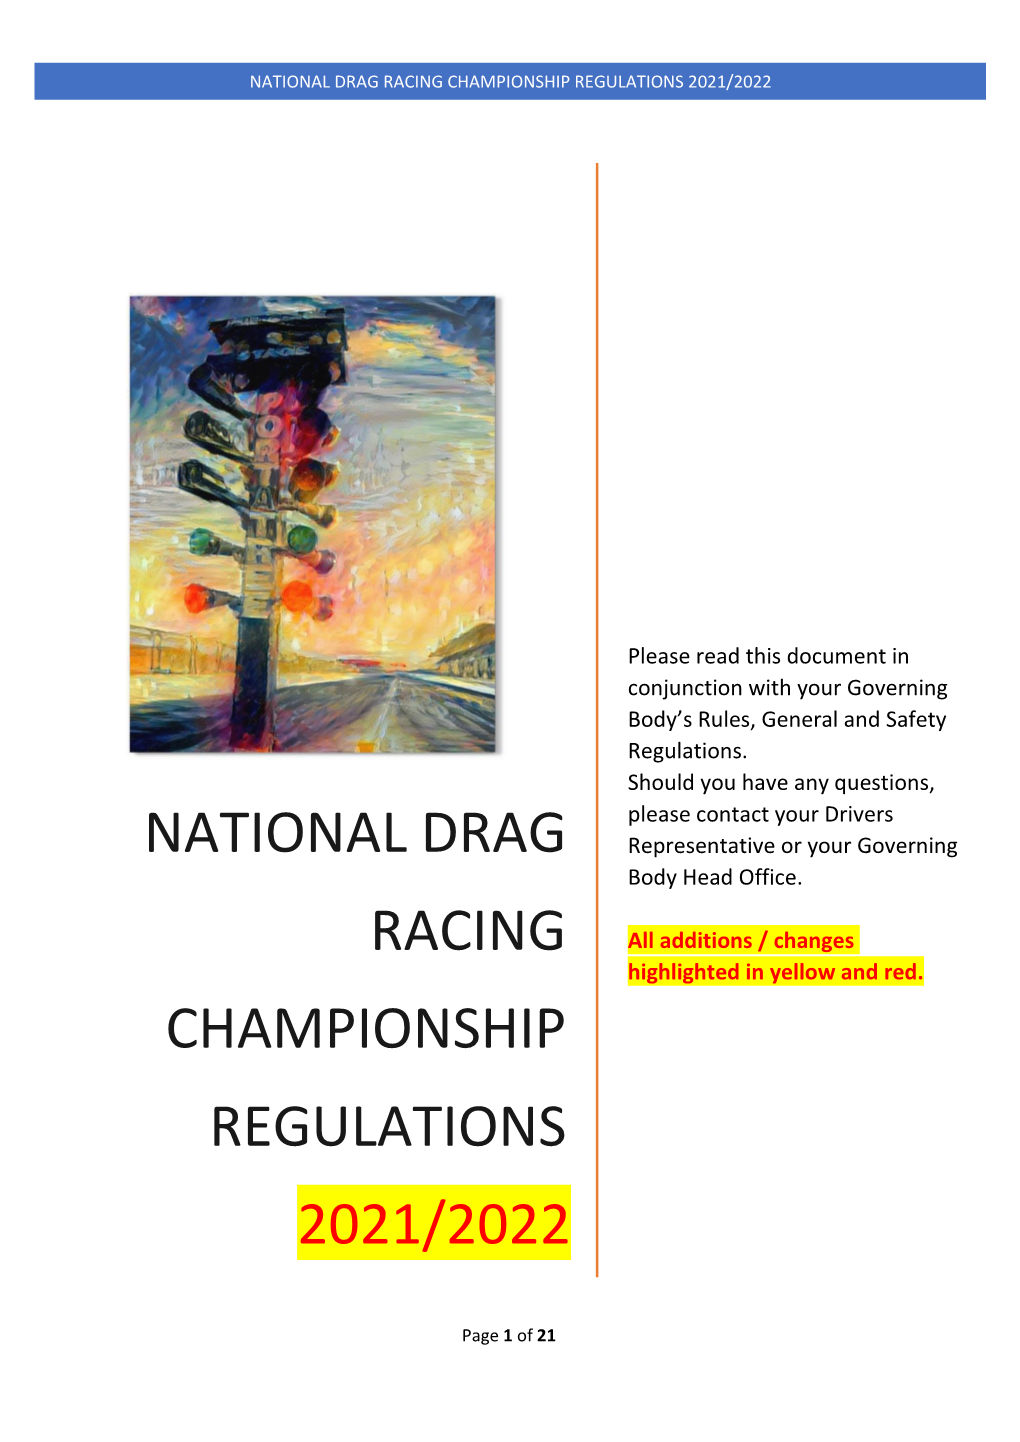 National Drag Racing Championship Regulations 2019-2020